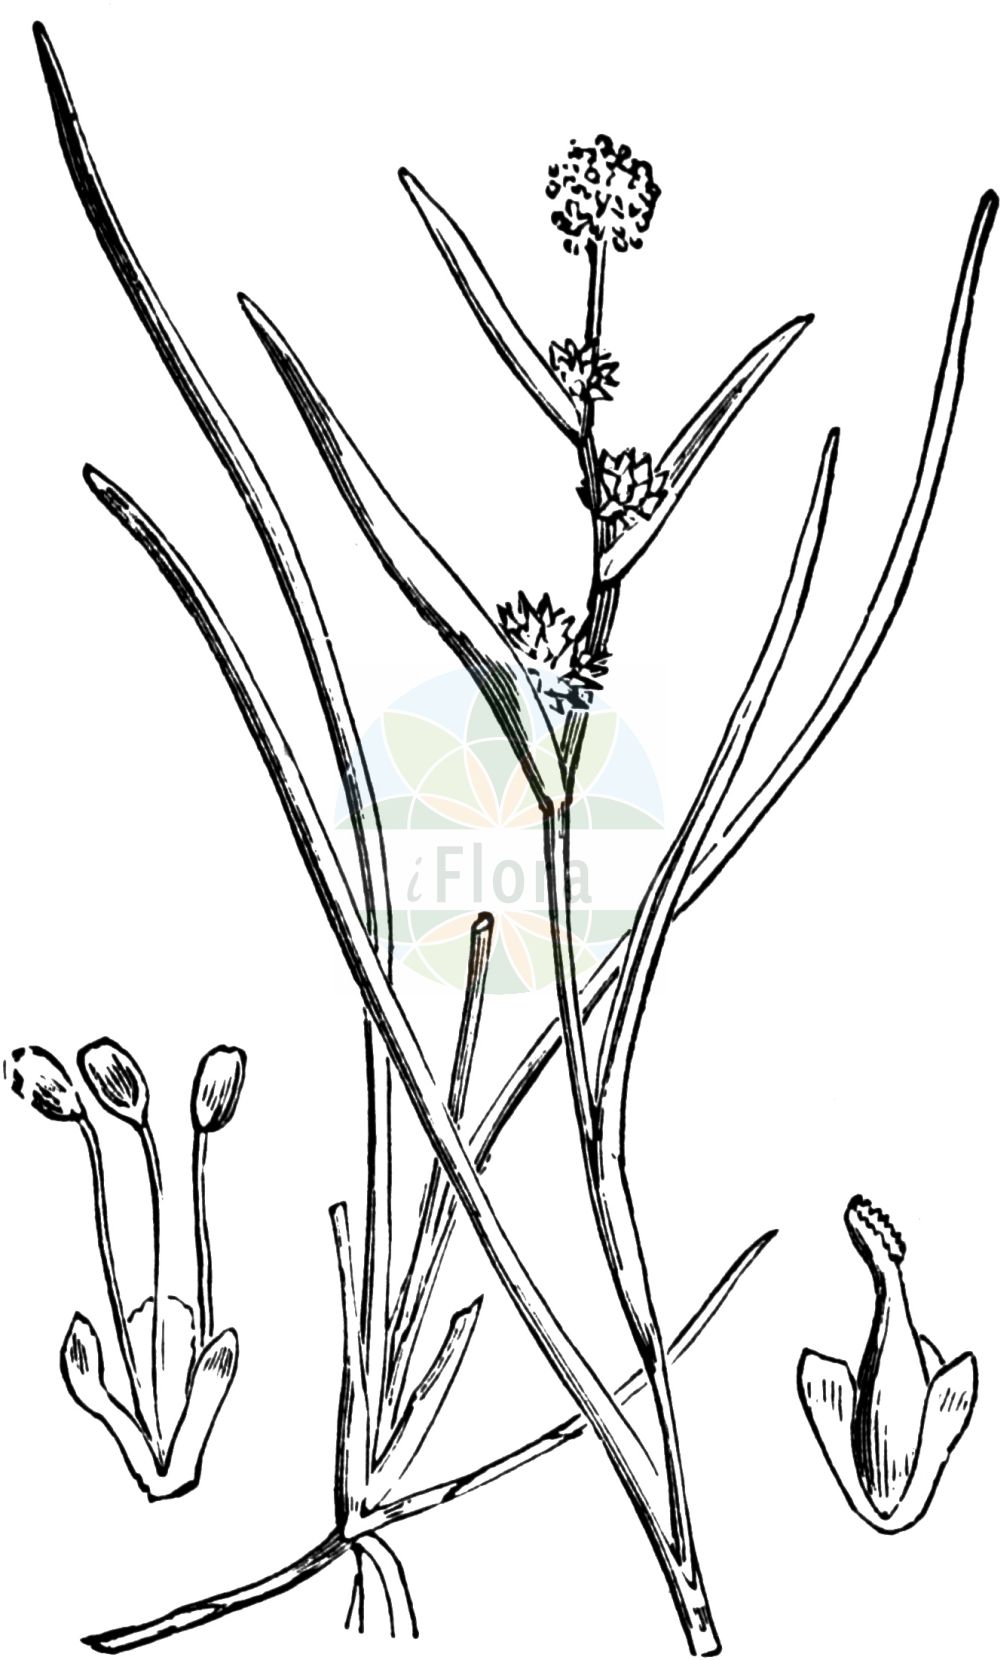 Historische Abbildung von Sparganium natans (Zwerg-Igelkolben - Least Bur-reed). Das Bild zeigt Blatt, Bluete, Frucht und Same. ---- Historical Drawing of Sparganium natans (Zwerg-Igelkolben - Least Bur-reed). The image is showing leaf, flower, fruit and seed.(Sparganium natans,Zwerg-Igelkolben,Least Bur-reed,Sparganium minimum,Sparganium natans,Zwerg-Igelkolben,Least Bur-reed,Little Bur-reed,Small Bur-reed,Sparganium,Igelkolben,Bur-reed,Typhaceae,Rohrkolbengewächse,Bur-reed family,Blatt,Bluete,Frucht,Same,leaf,flower,fruit,seed,Fitch et al. (1880))